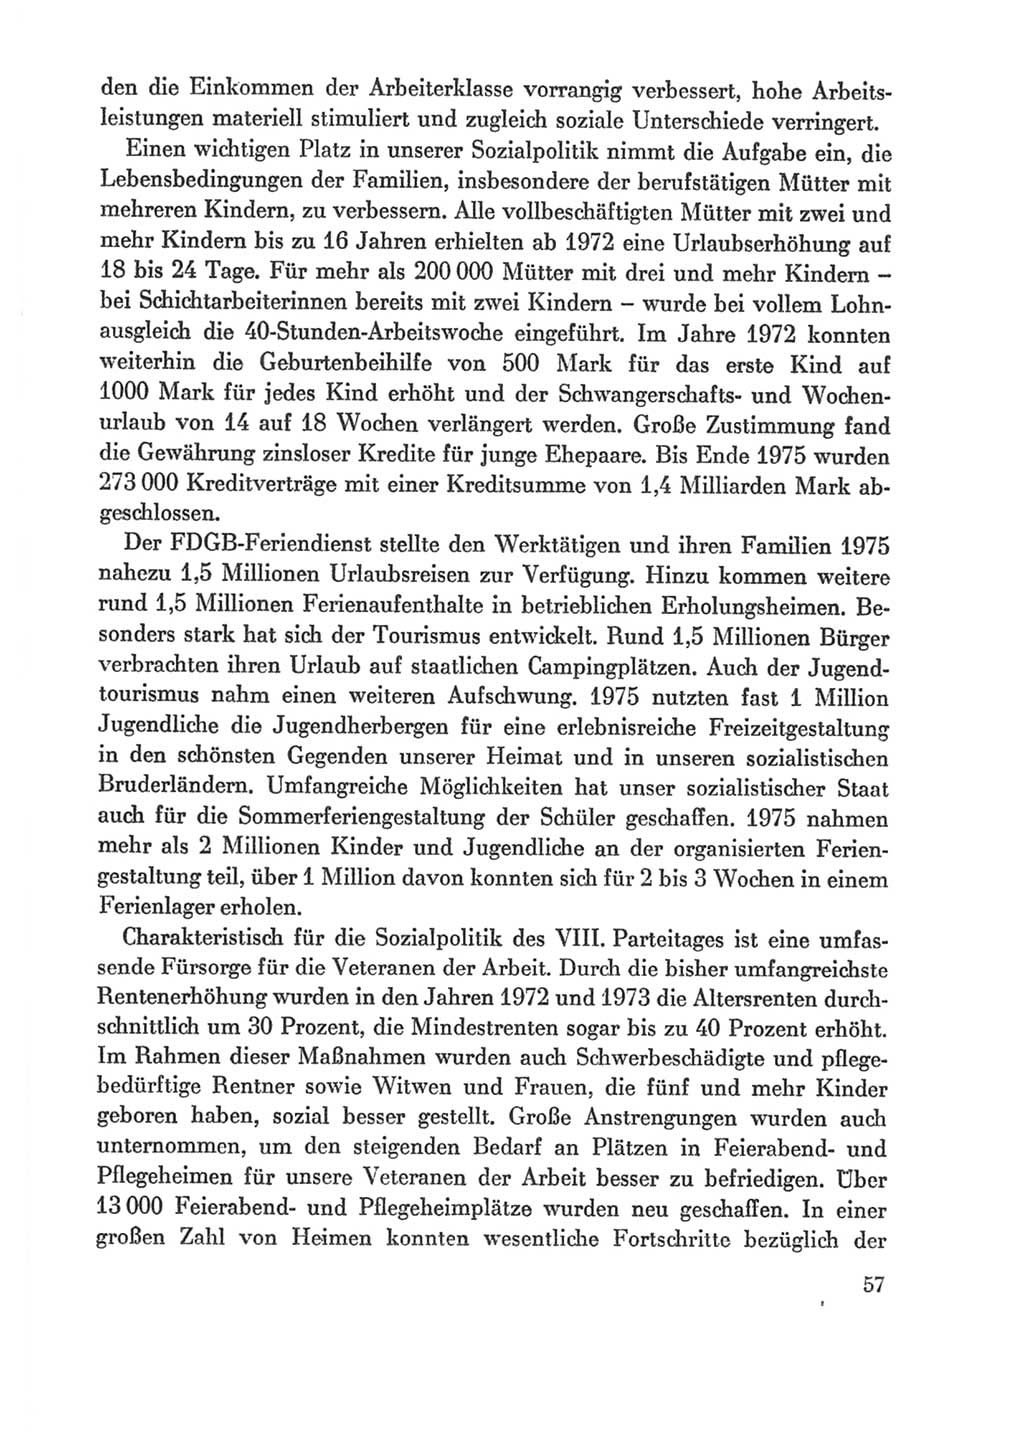 Protokoll der Verhandlungen des Ⅸ. Parteitages der Sozialistischen Einheitspartei Deutschlands (SED) [Deutsche Demokratische Republik (DDR)] 1976, Band 1, Seite 57 (Prot. Verh. Ⅸ. PT SED DDR 1976, Bd. 1, S. 57)